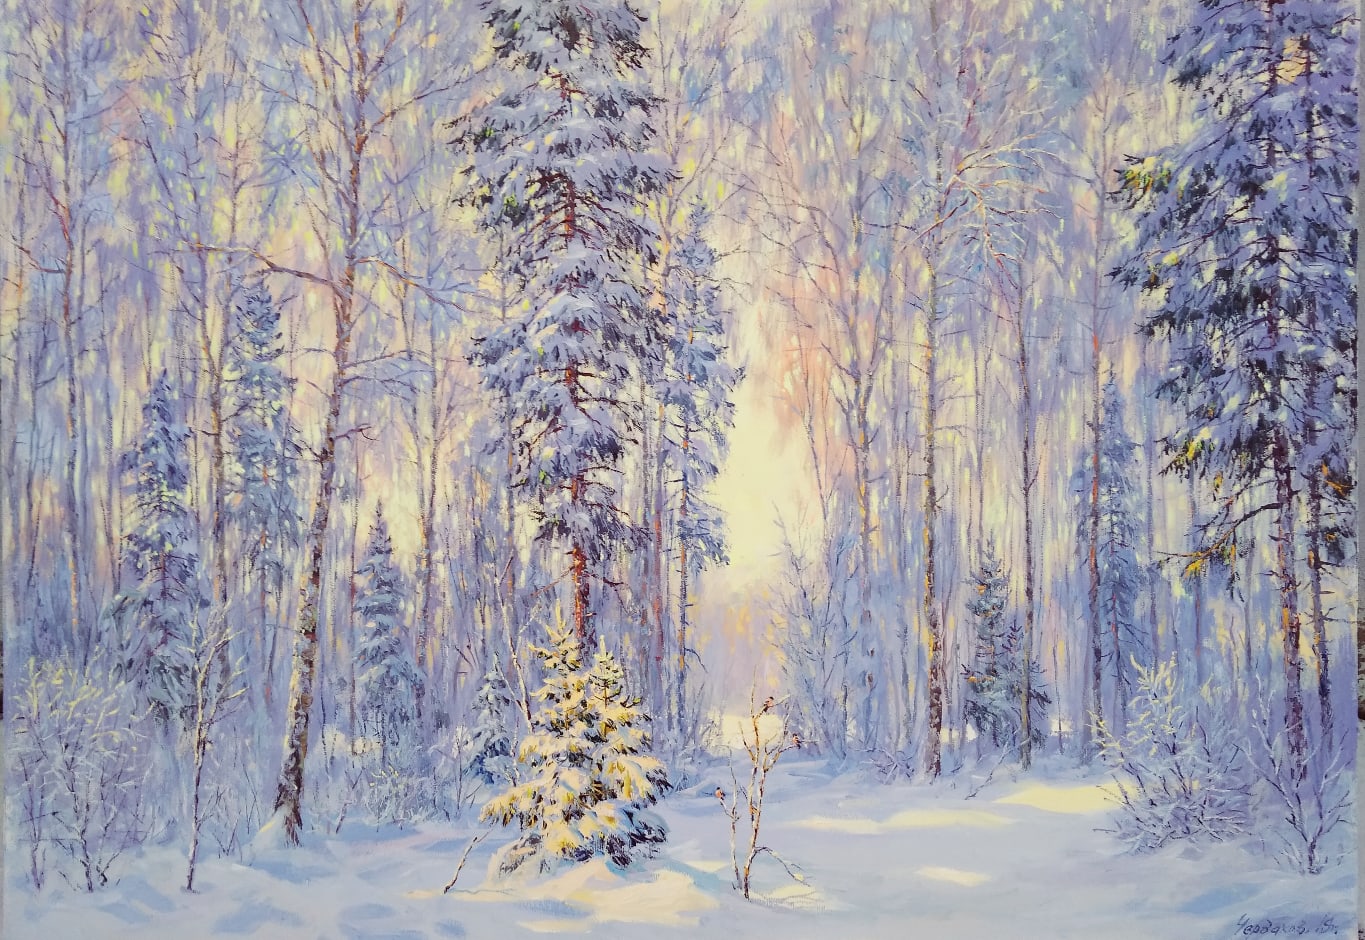 Winter Fairytale - 1, Vyacheslav Cherdakov, Buy the painting Oil